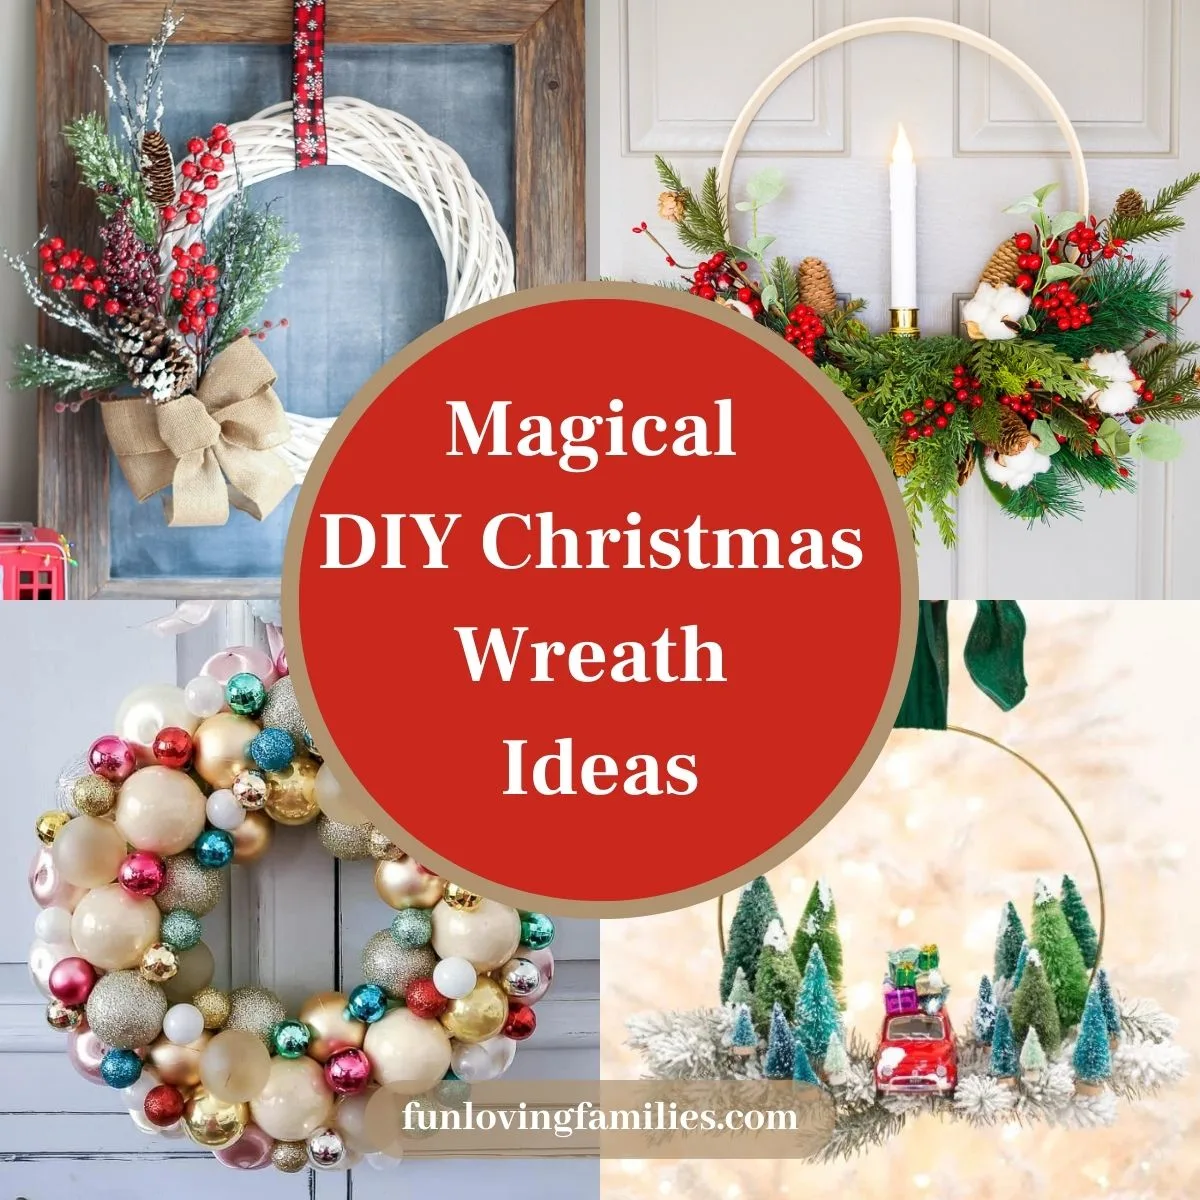 Magical DIY Christmas Wreath Ideas